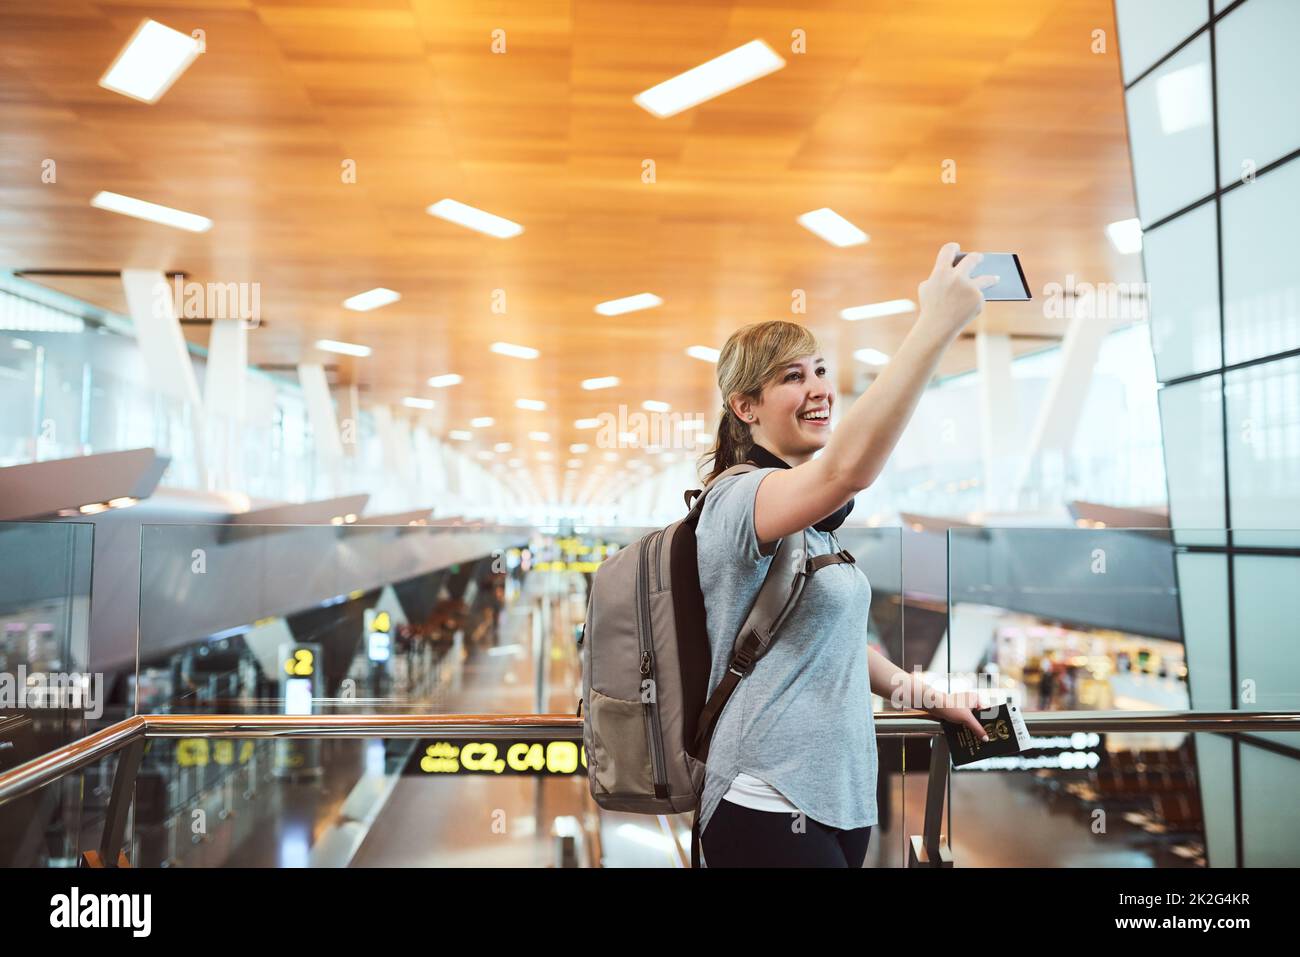 Der letzte, bevor ich gehe. Ausgeschnittene Aufnahme einer attraktiven jungen Frau, die Selfies macht, während sie auf einem Flughafen steht. Stockfoto